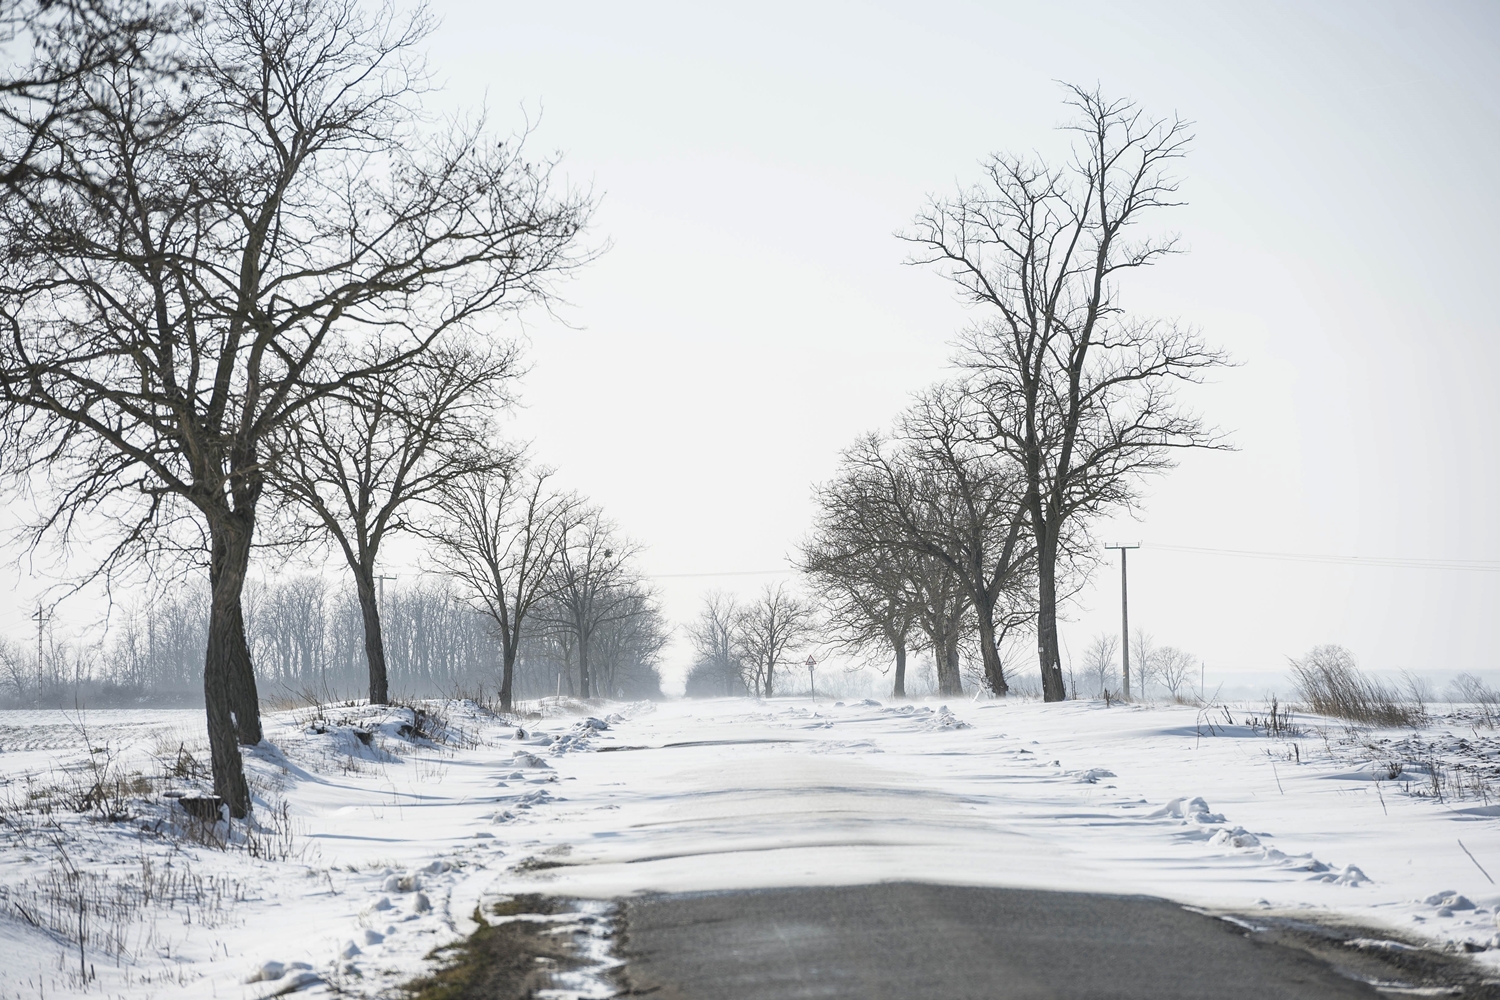 Hófúvás miatt zártak le utakat Vas megyében 9